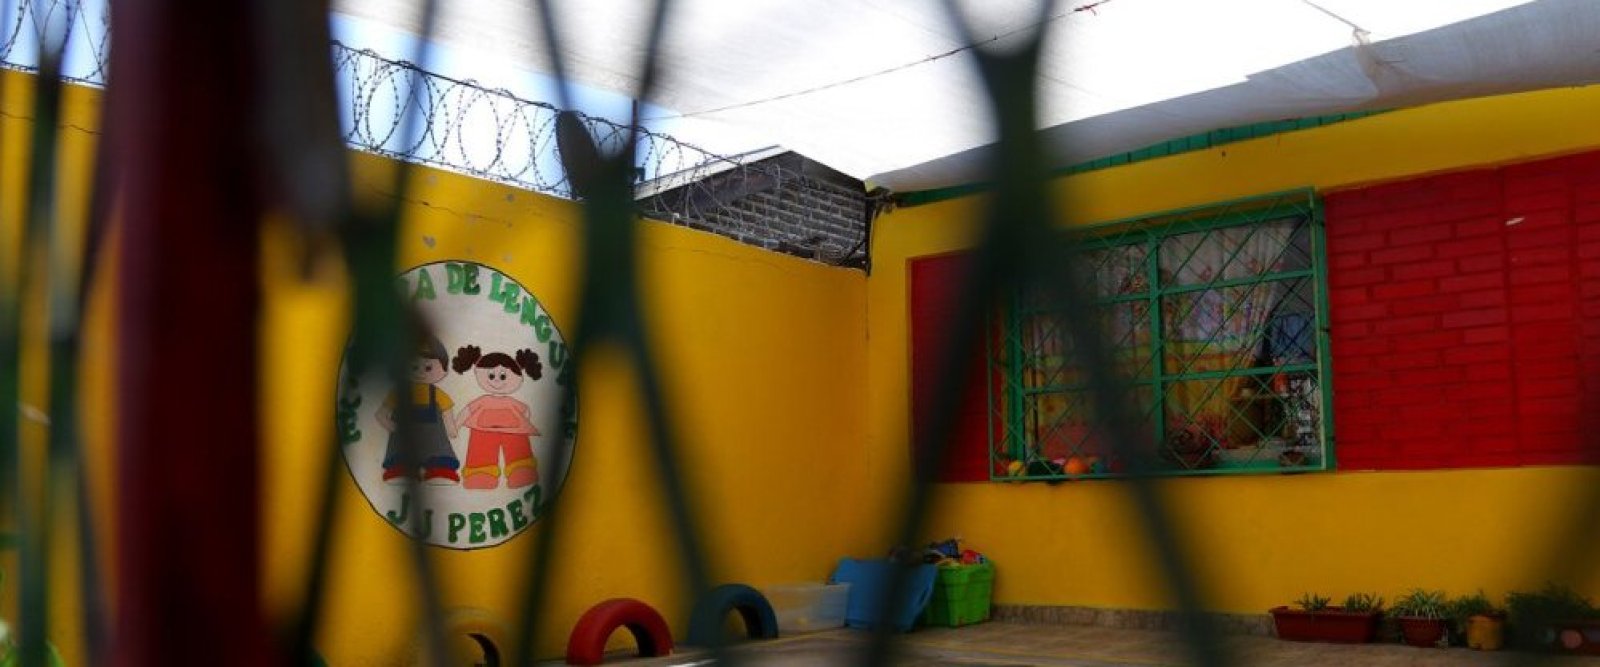 Abuso sexual en colegio de Temuco: Auxiliar de aseo quedó en prisión preventiva